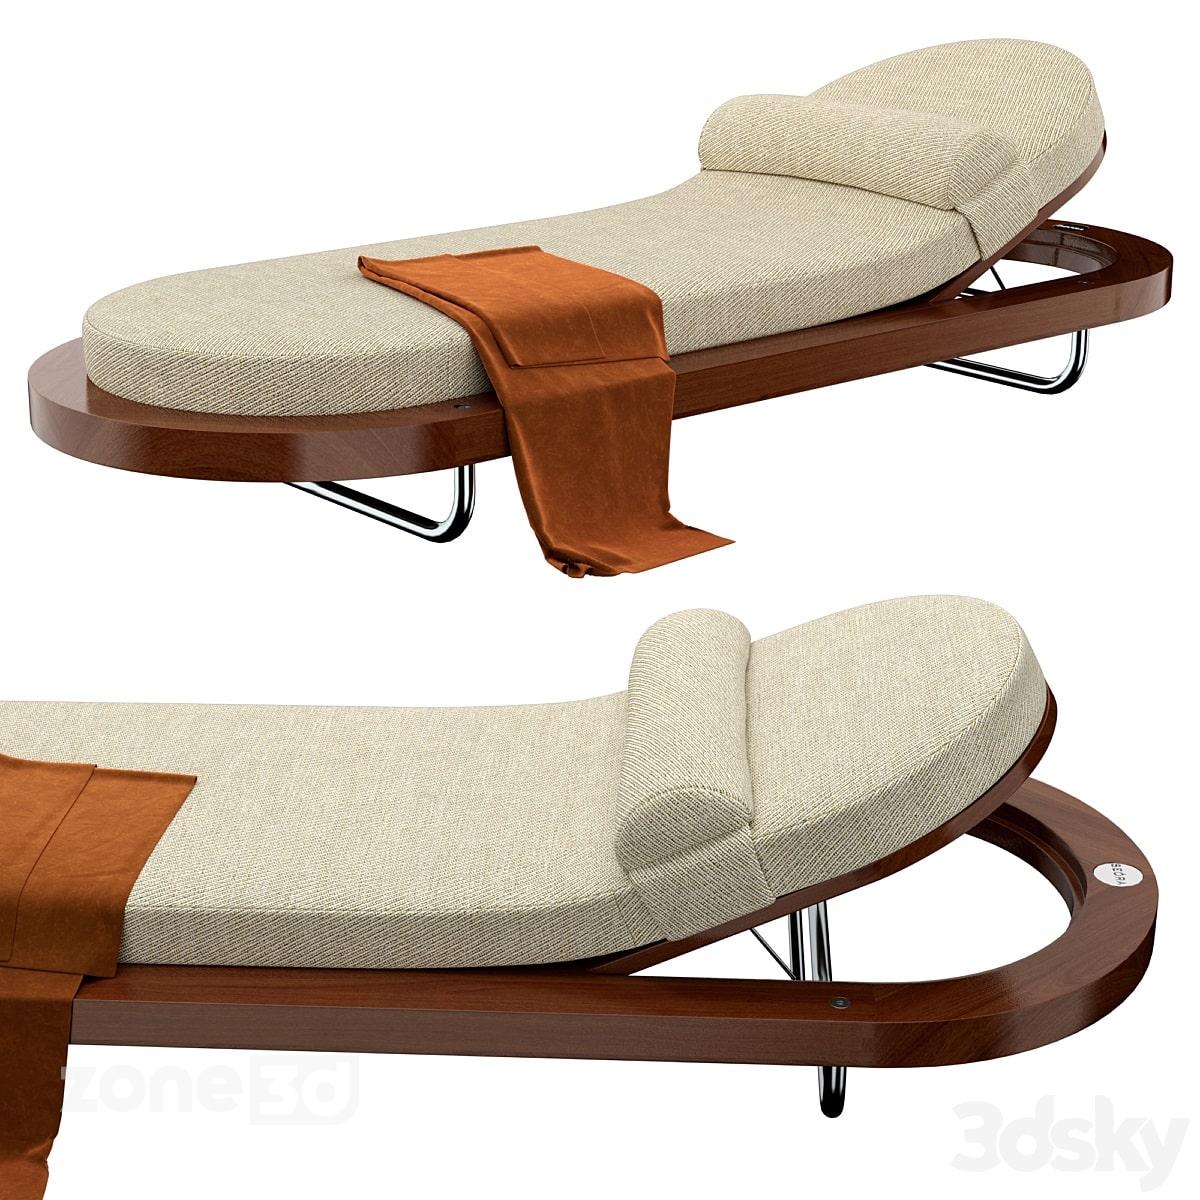 آبجکت صندلی حمام آفتاب بیضی مدرن پارچه ای و چوبی با پایه فلزی مدل Seora Riviera